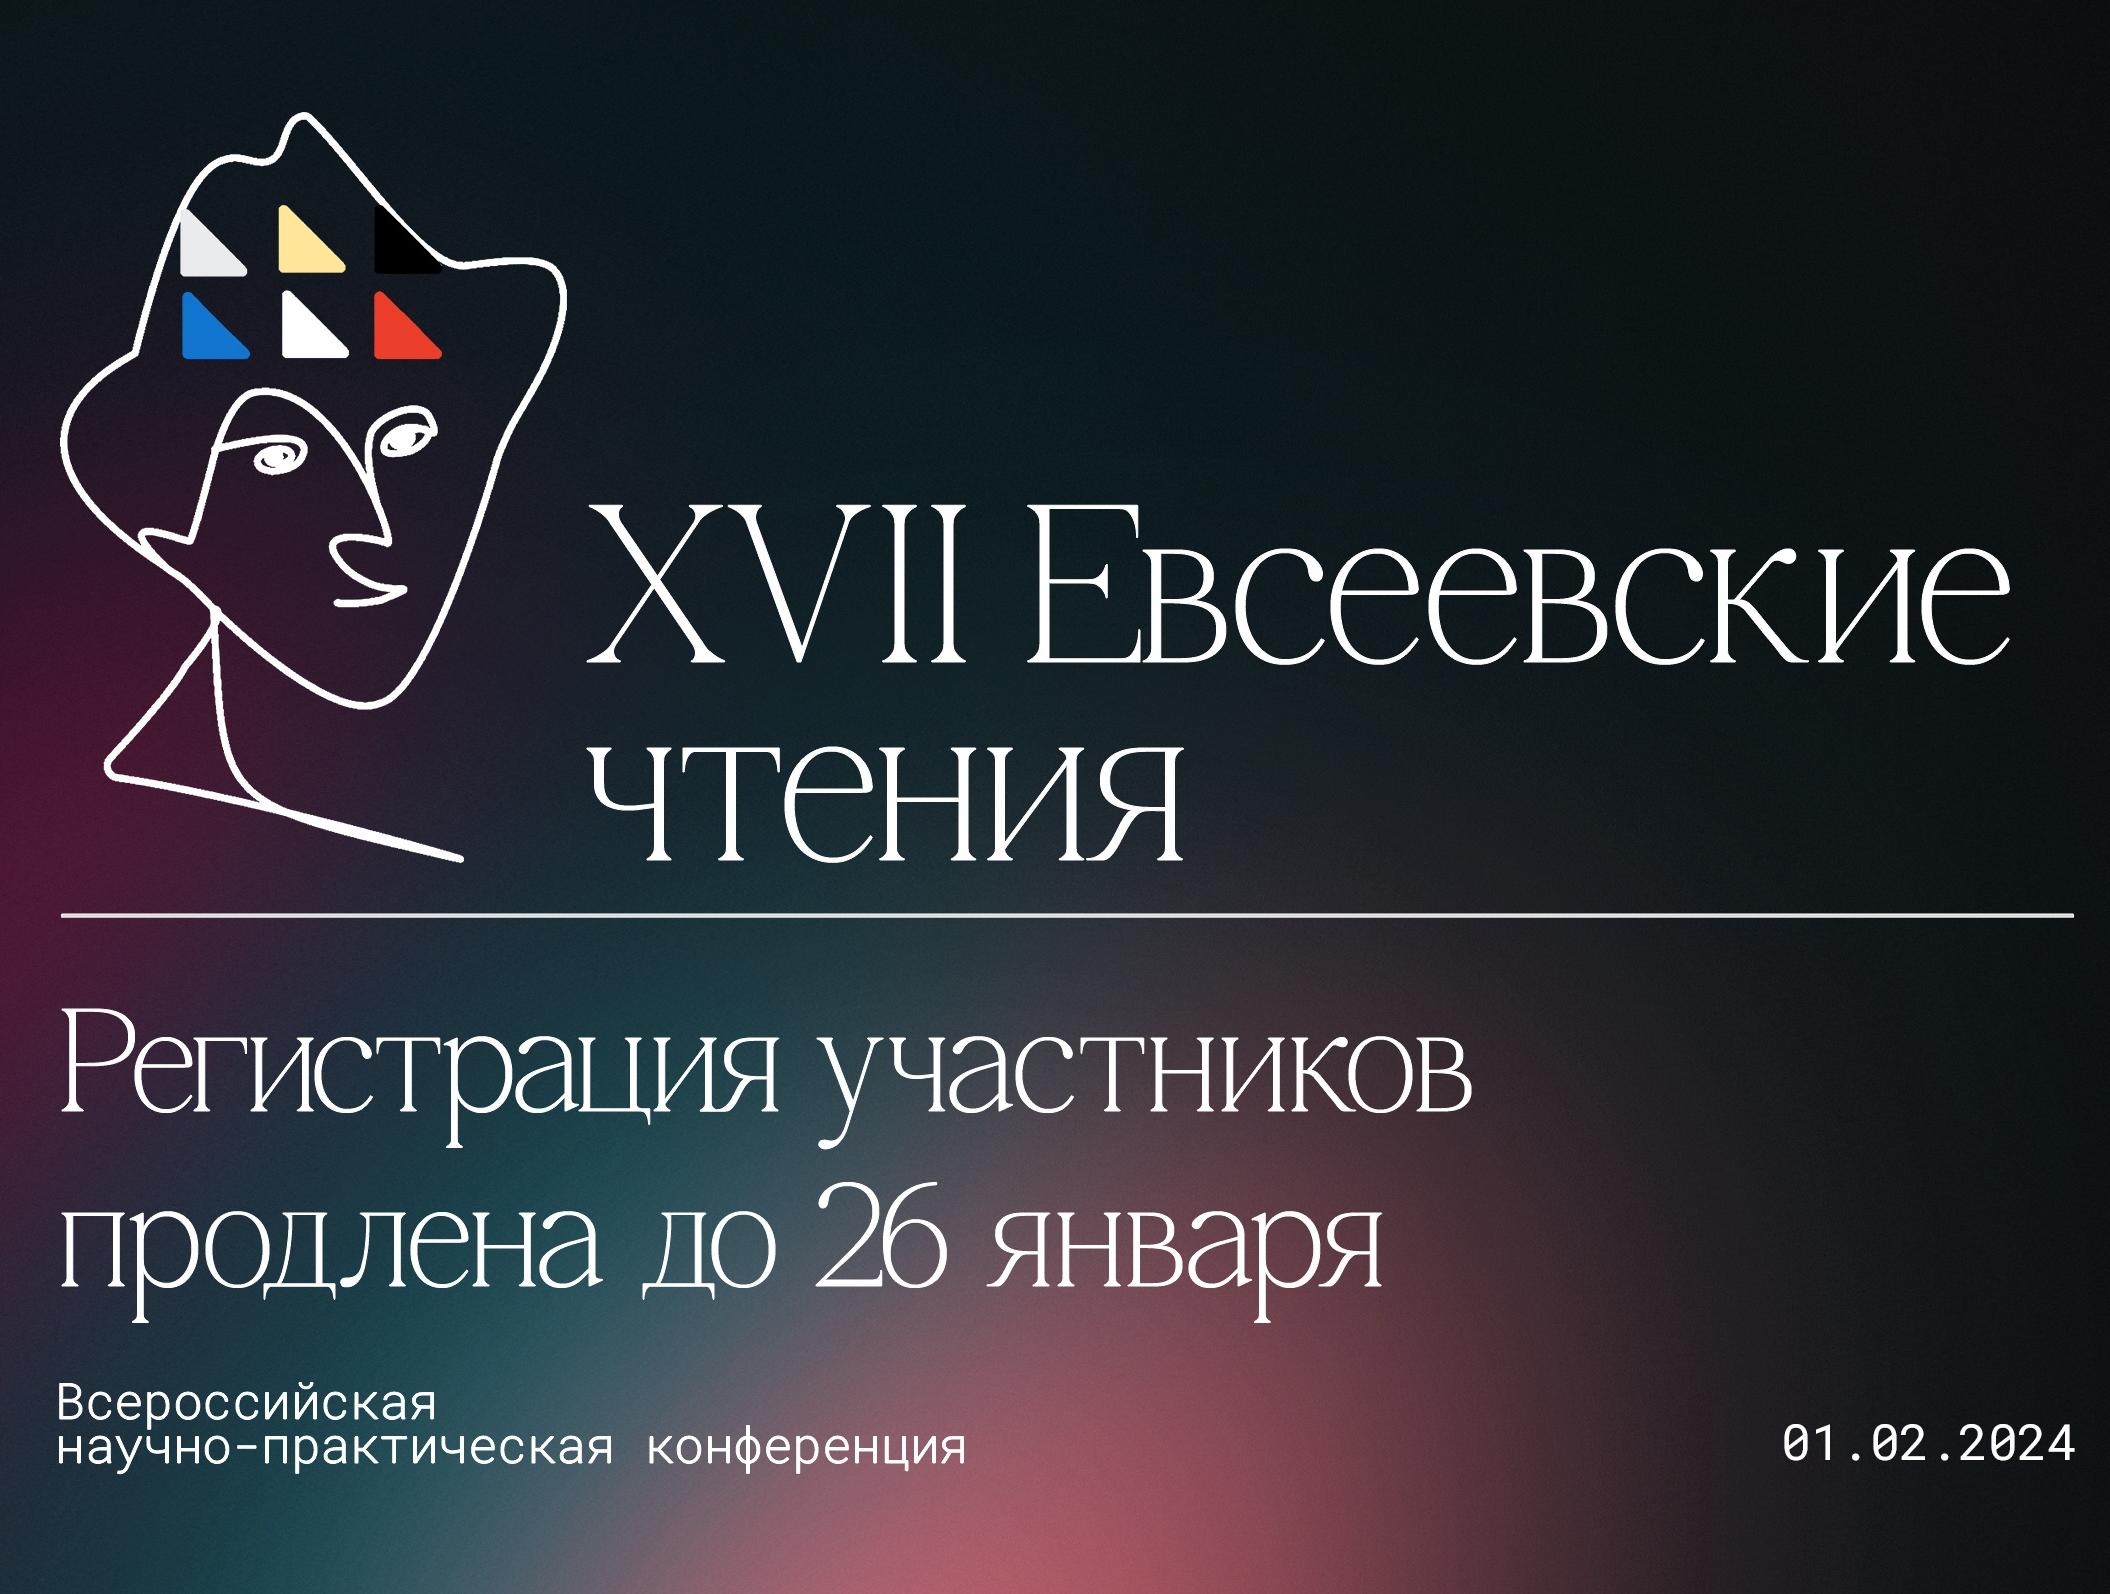 Регистрация на XVII Евсеевские чтения продлена до 26 января